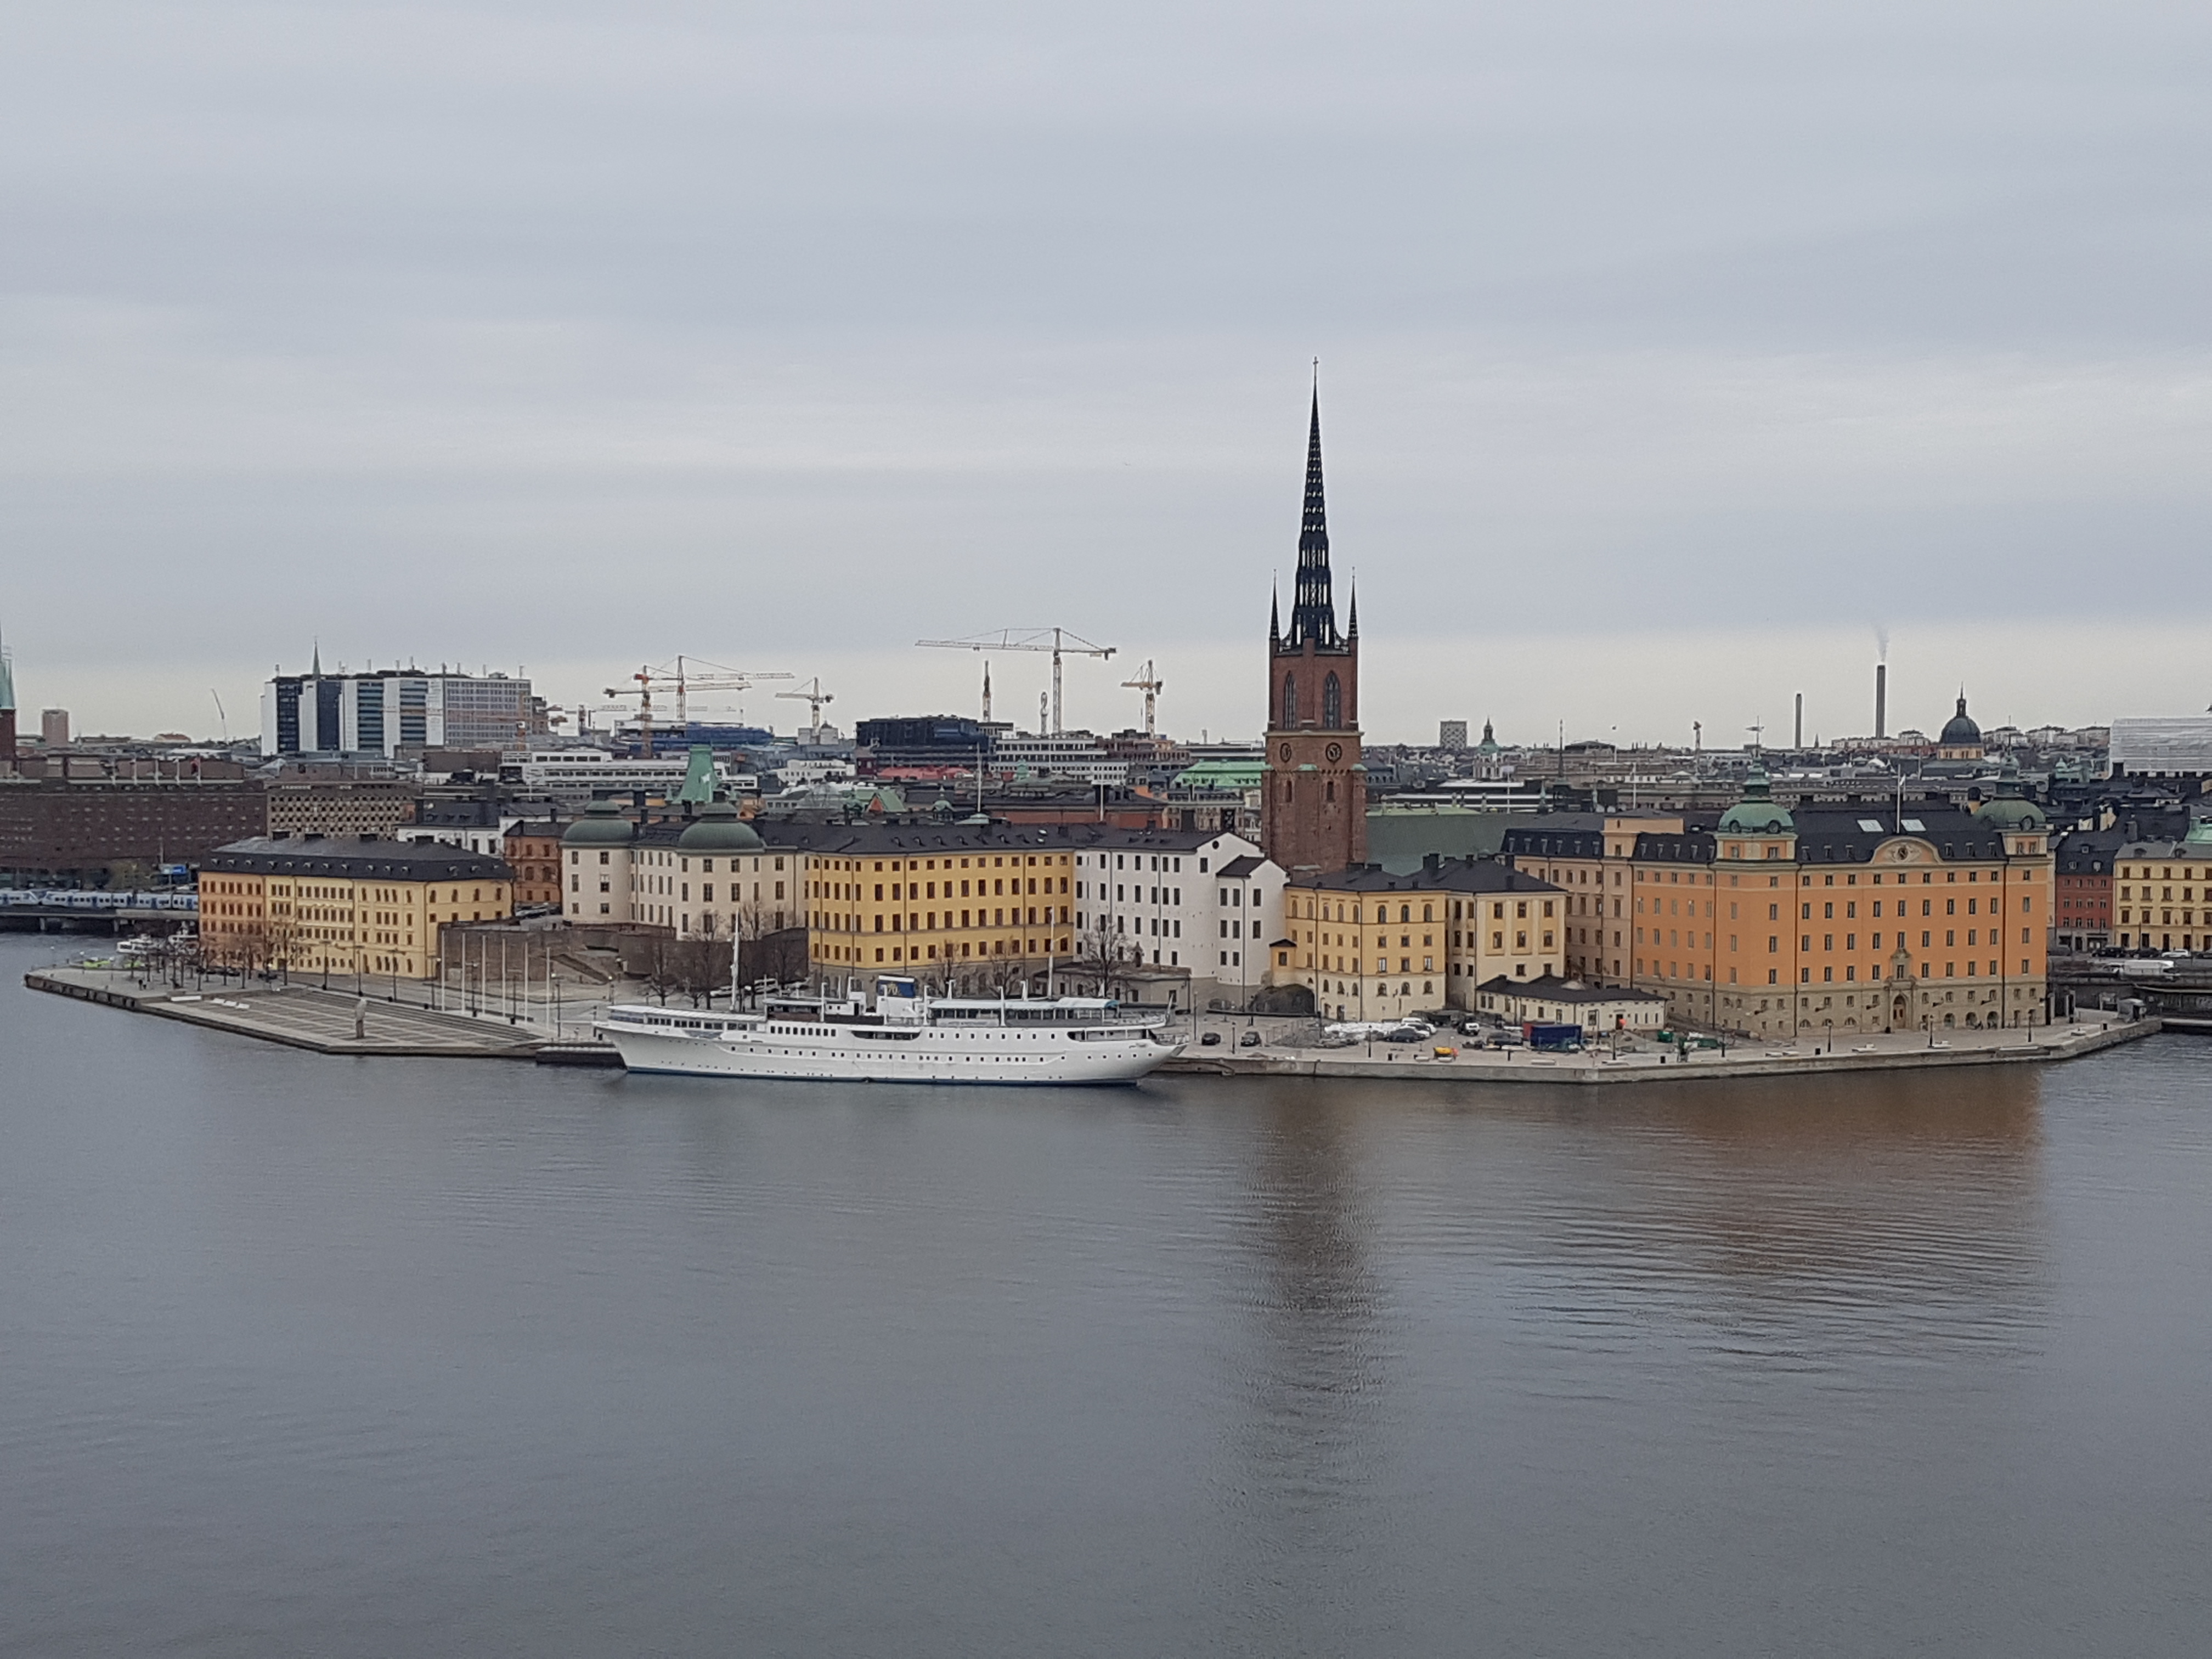 Kunjungan ke Stockholm pada 11 12 April 2017 ini adalah kali kedua bagi saya ke Swedia setelah sebelumnya mengunjungi Malmo pada tahun 2015